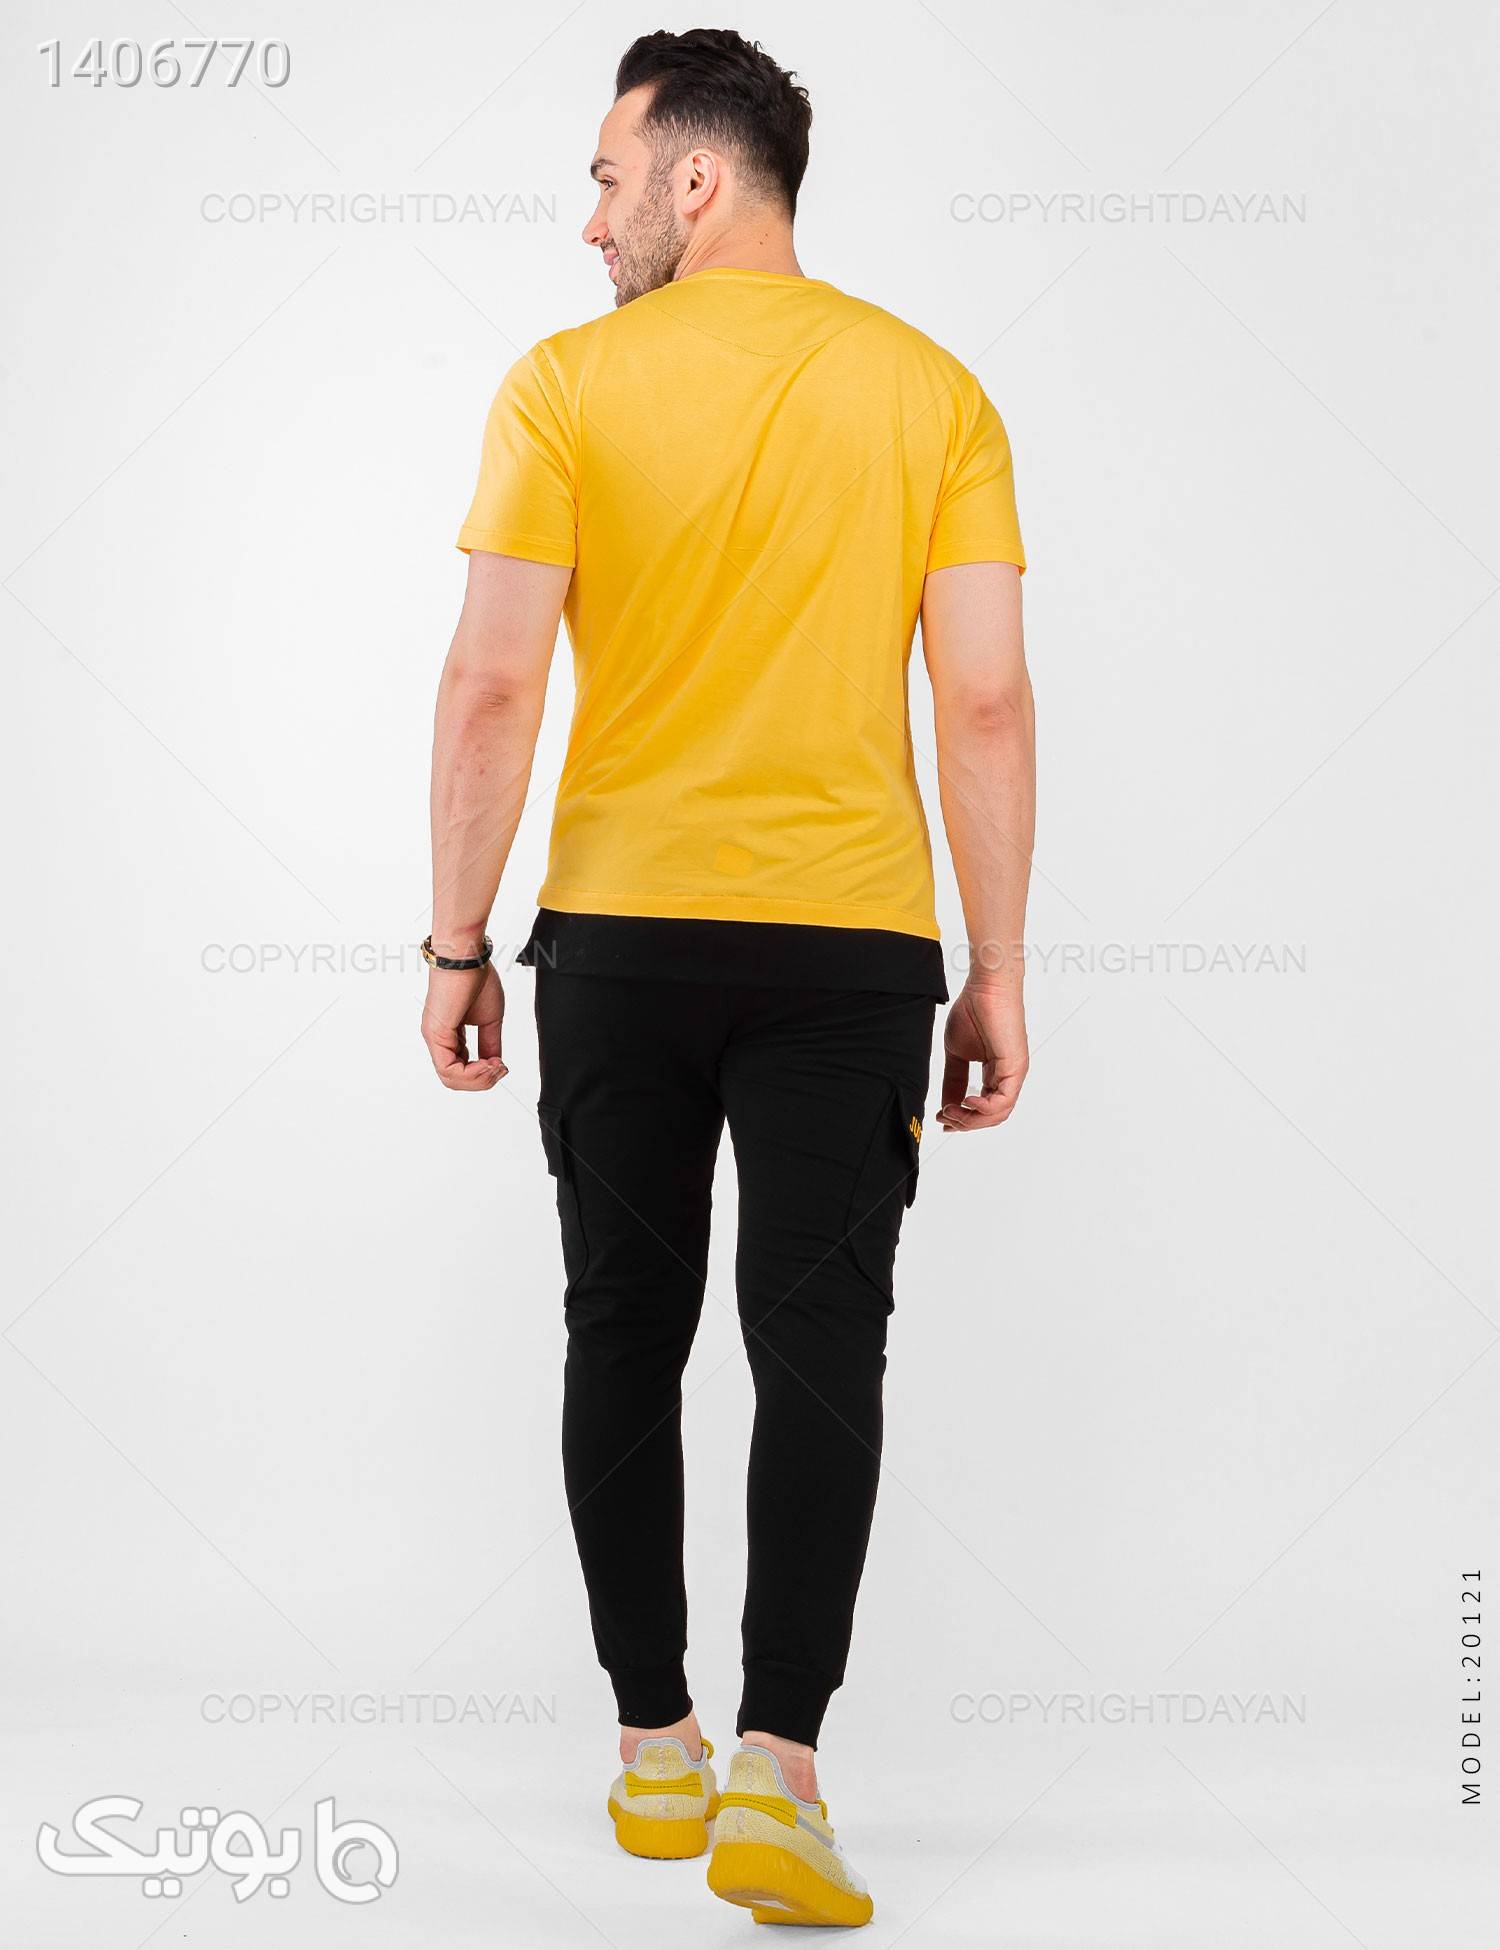 ست تیشرت و شلوار مردانه Nike مدل 20121